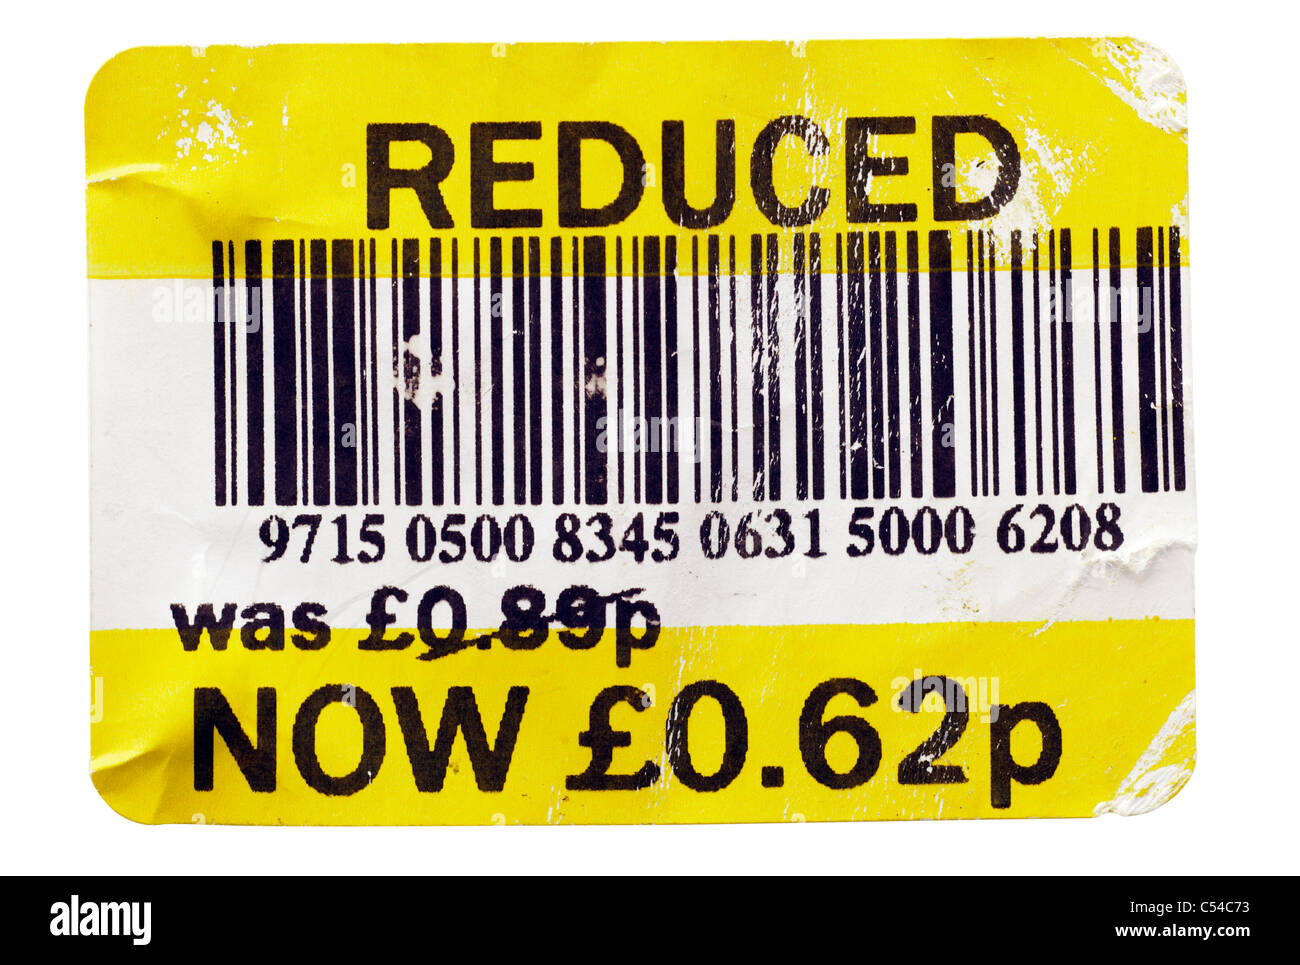 Reducción de supermercados cutres etiqueta con un precio reducido de 89 peniques a 62 peniques. Sólo EDITORIAL Foto de stock